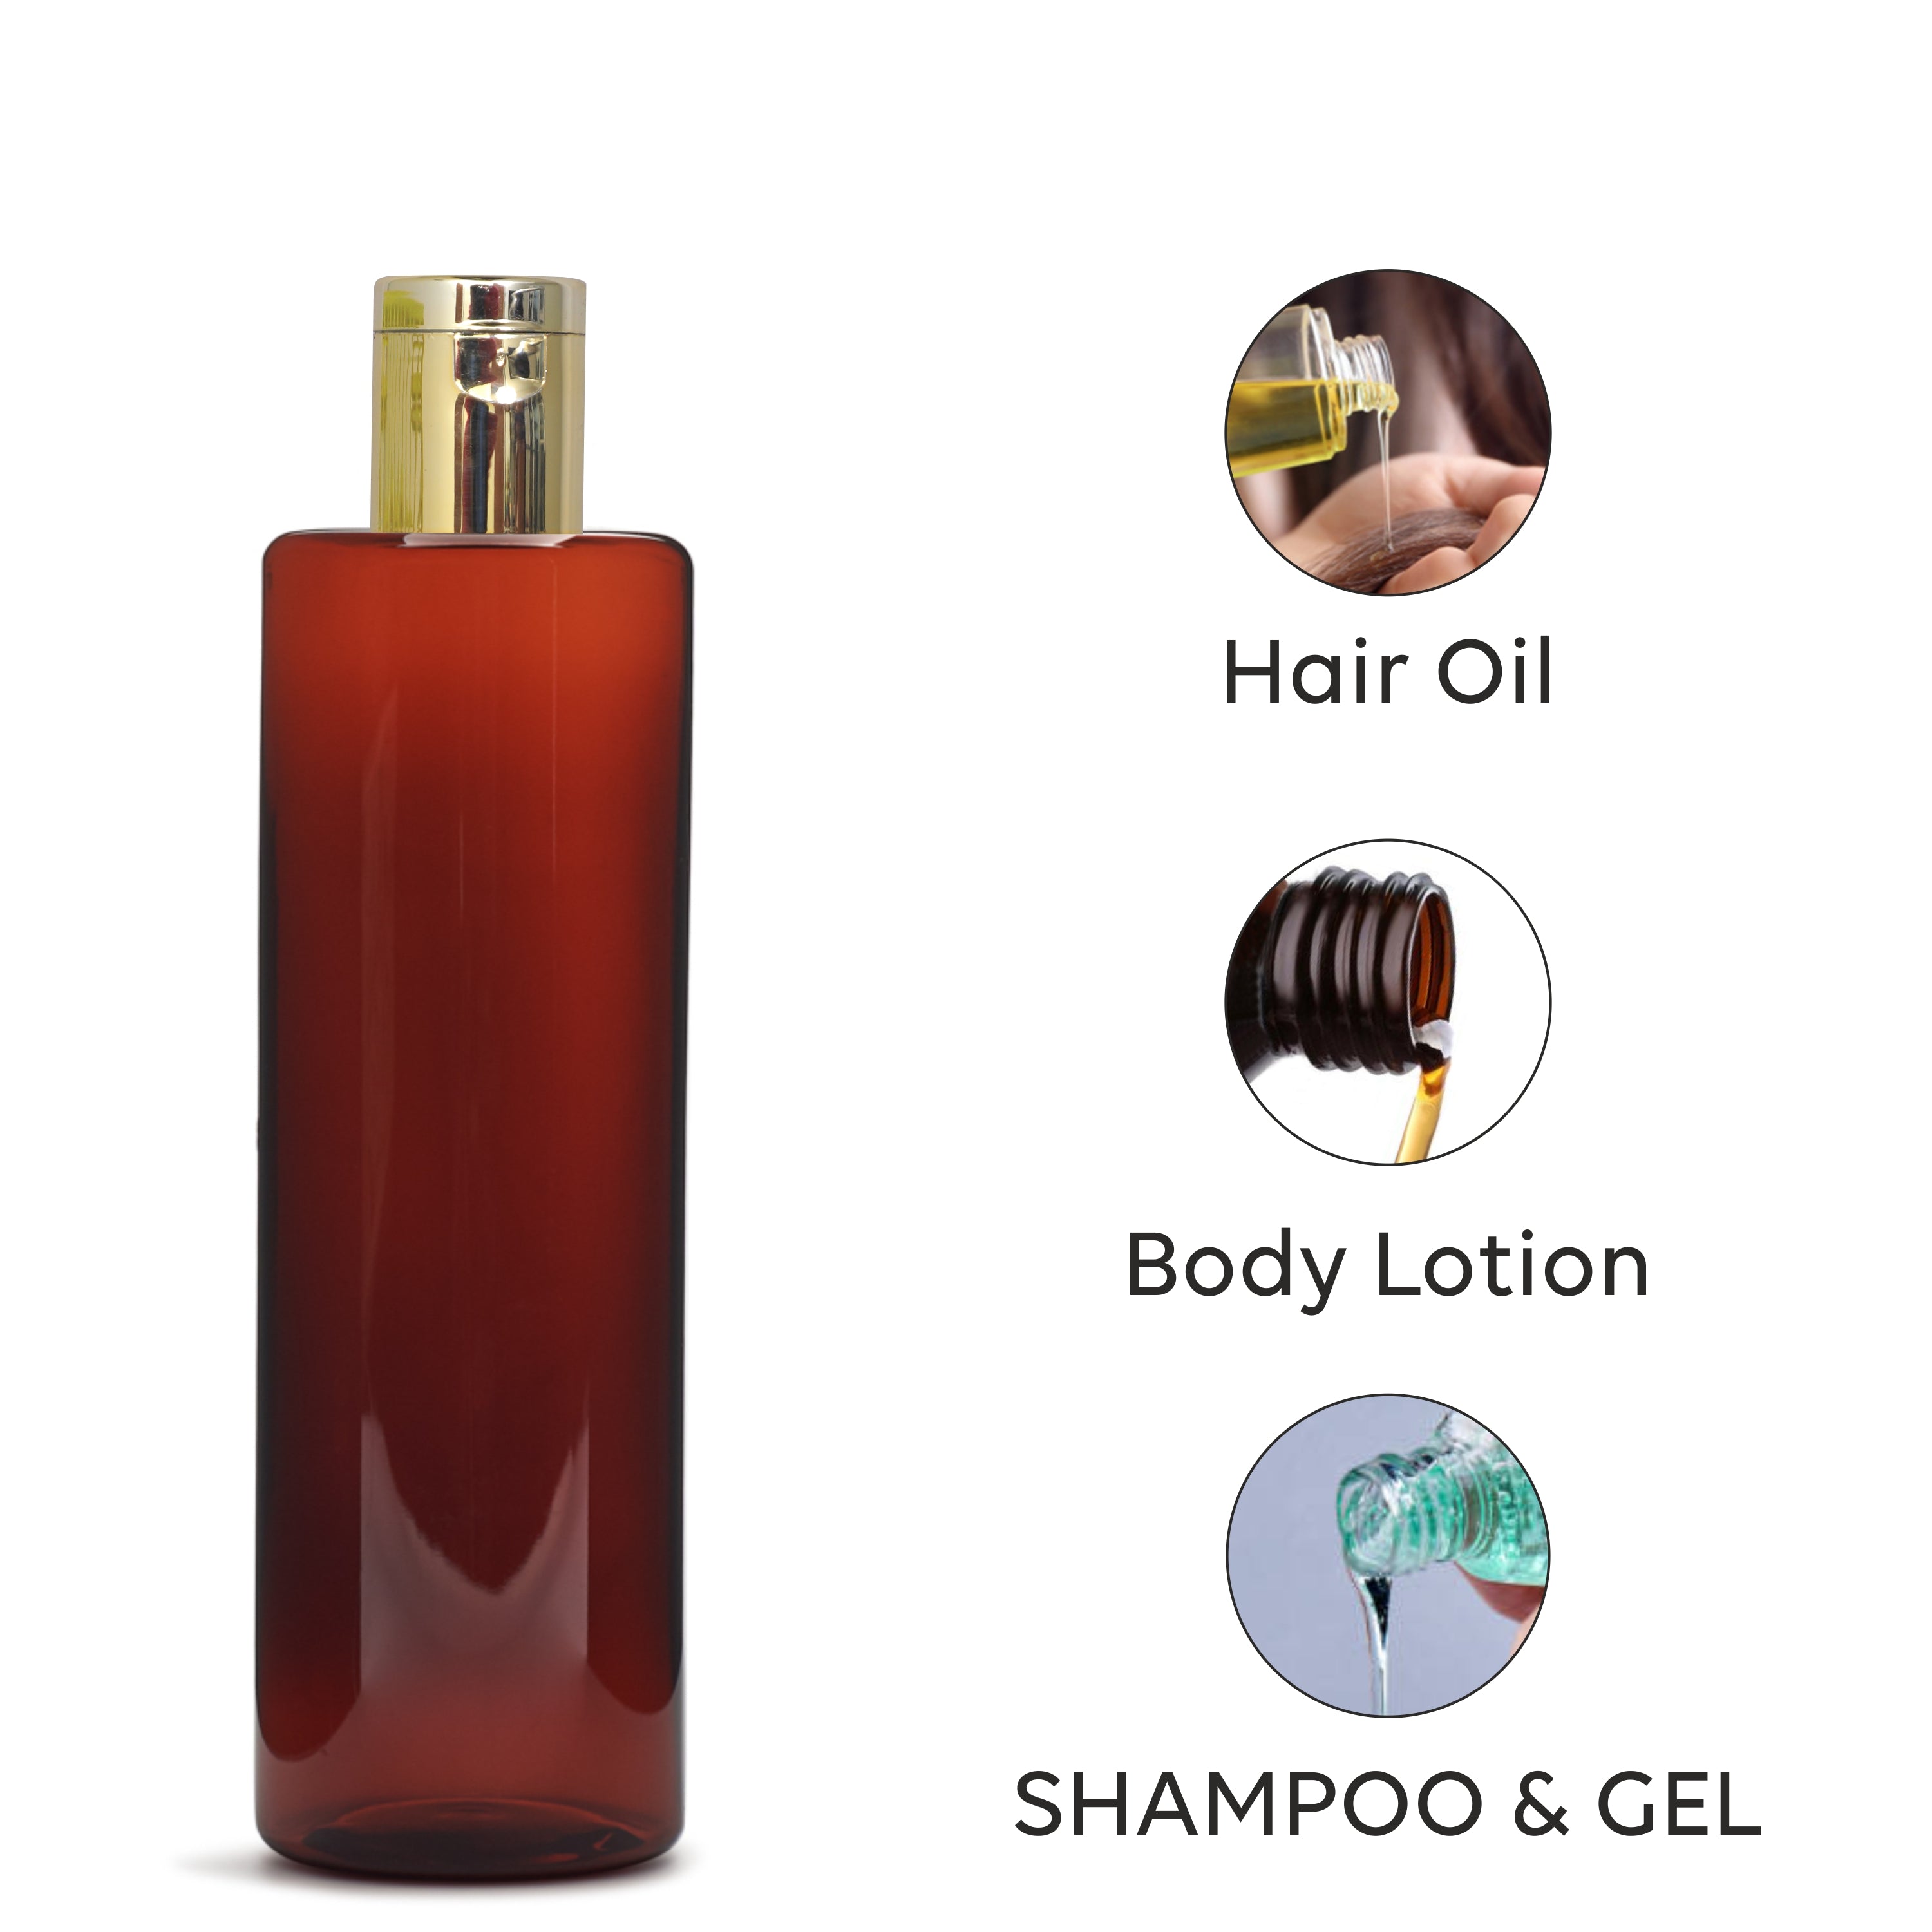 amber bottle, cosmetic packaging , packaging bottles, airtight bottle, leakproof bottle, serum bottle